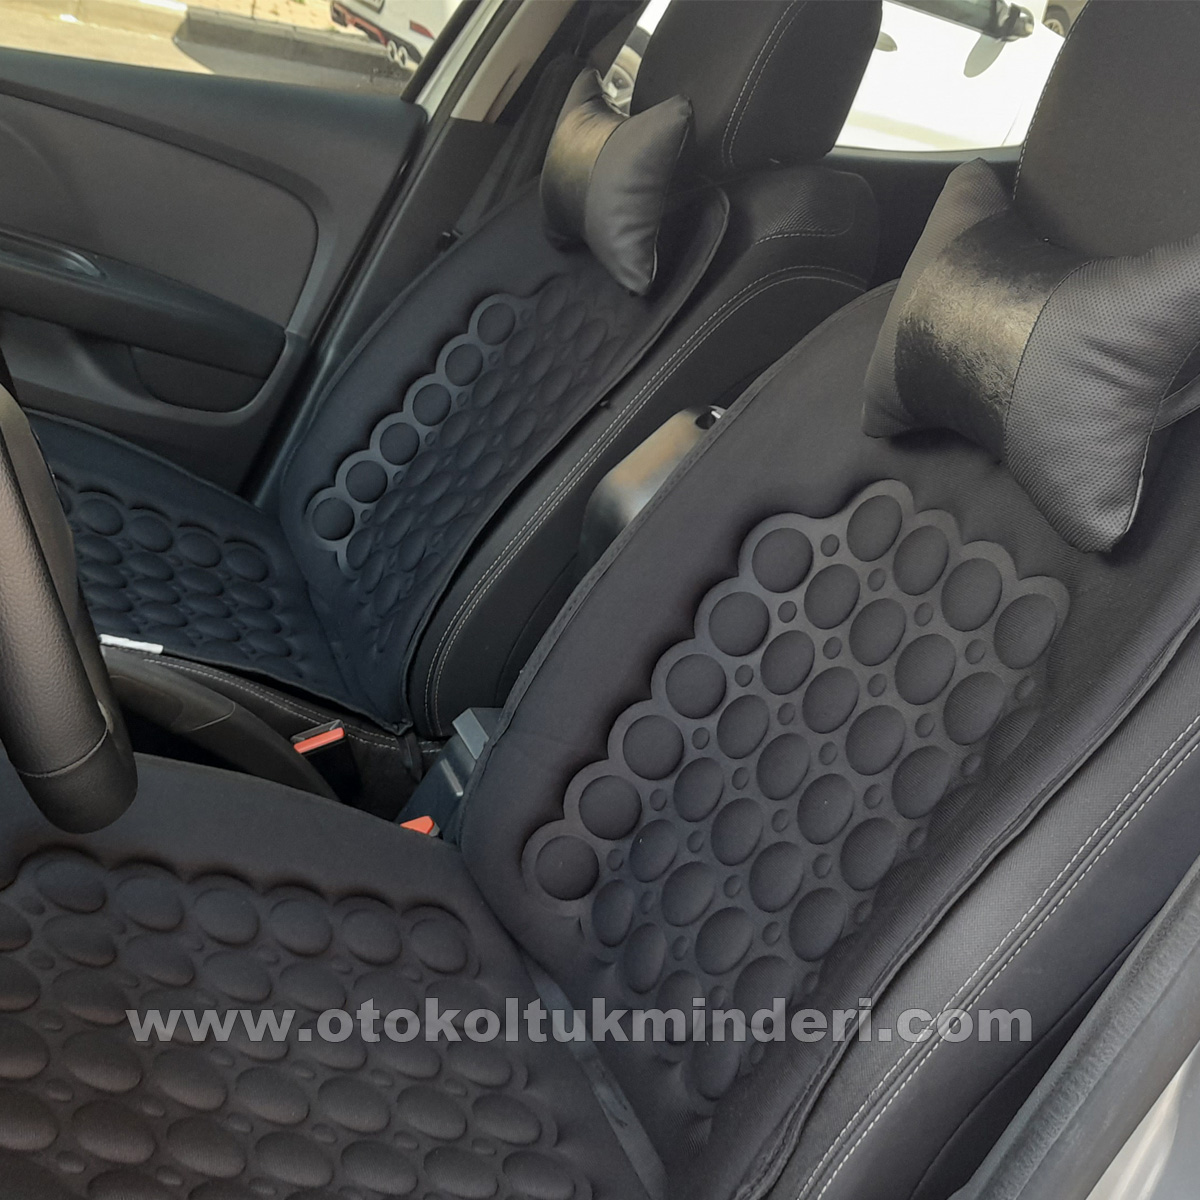 Audi koltuk kılıfı - Audi uyumlu koltuk minderi